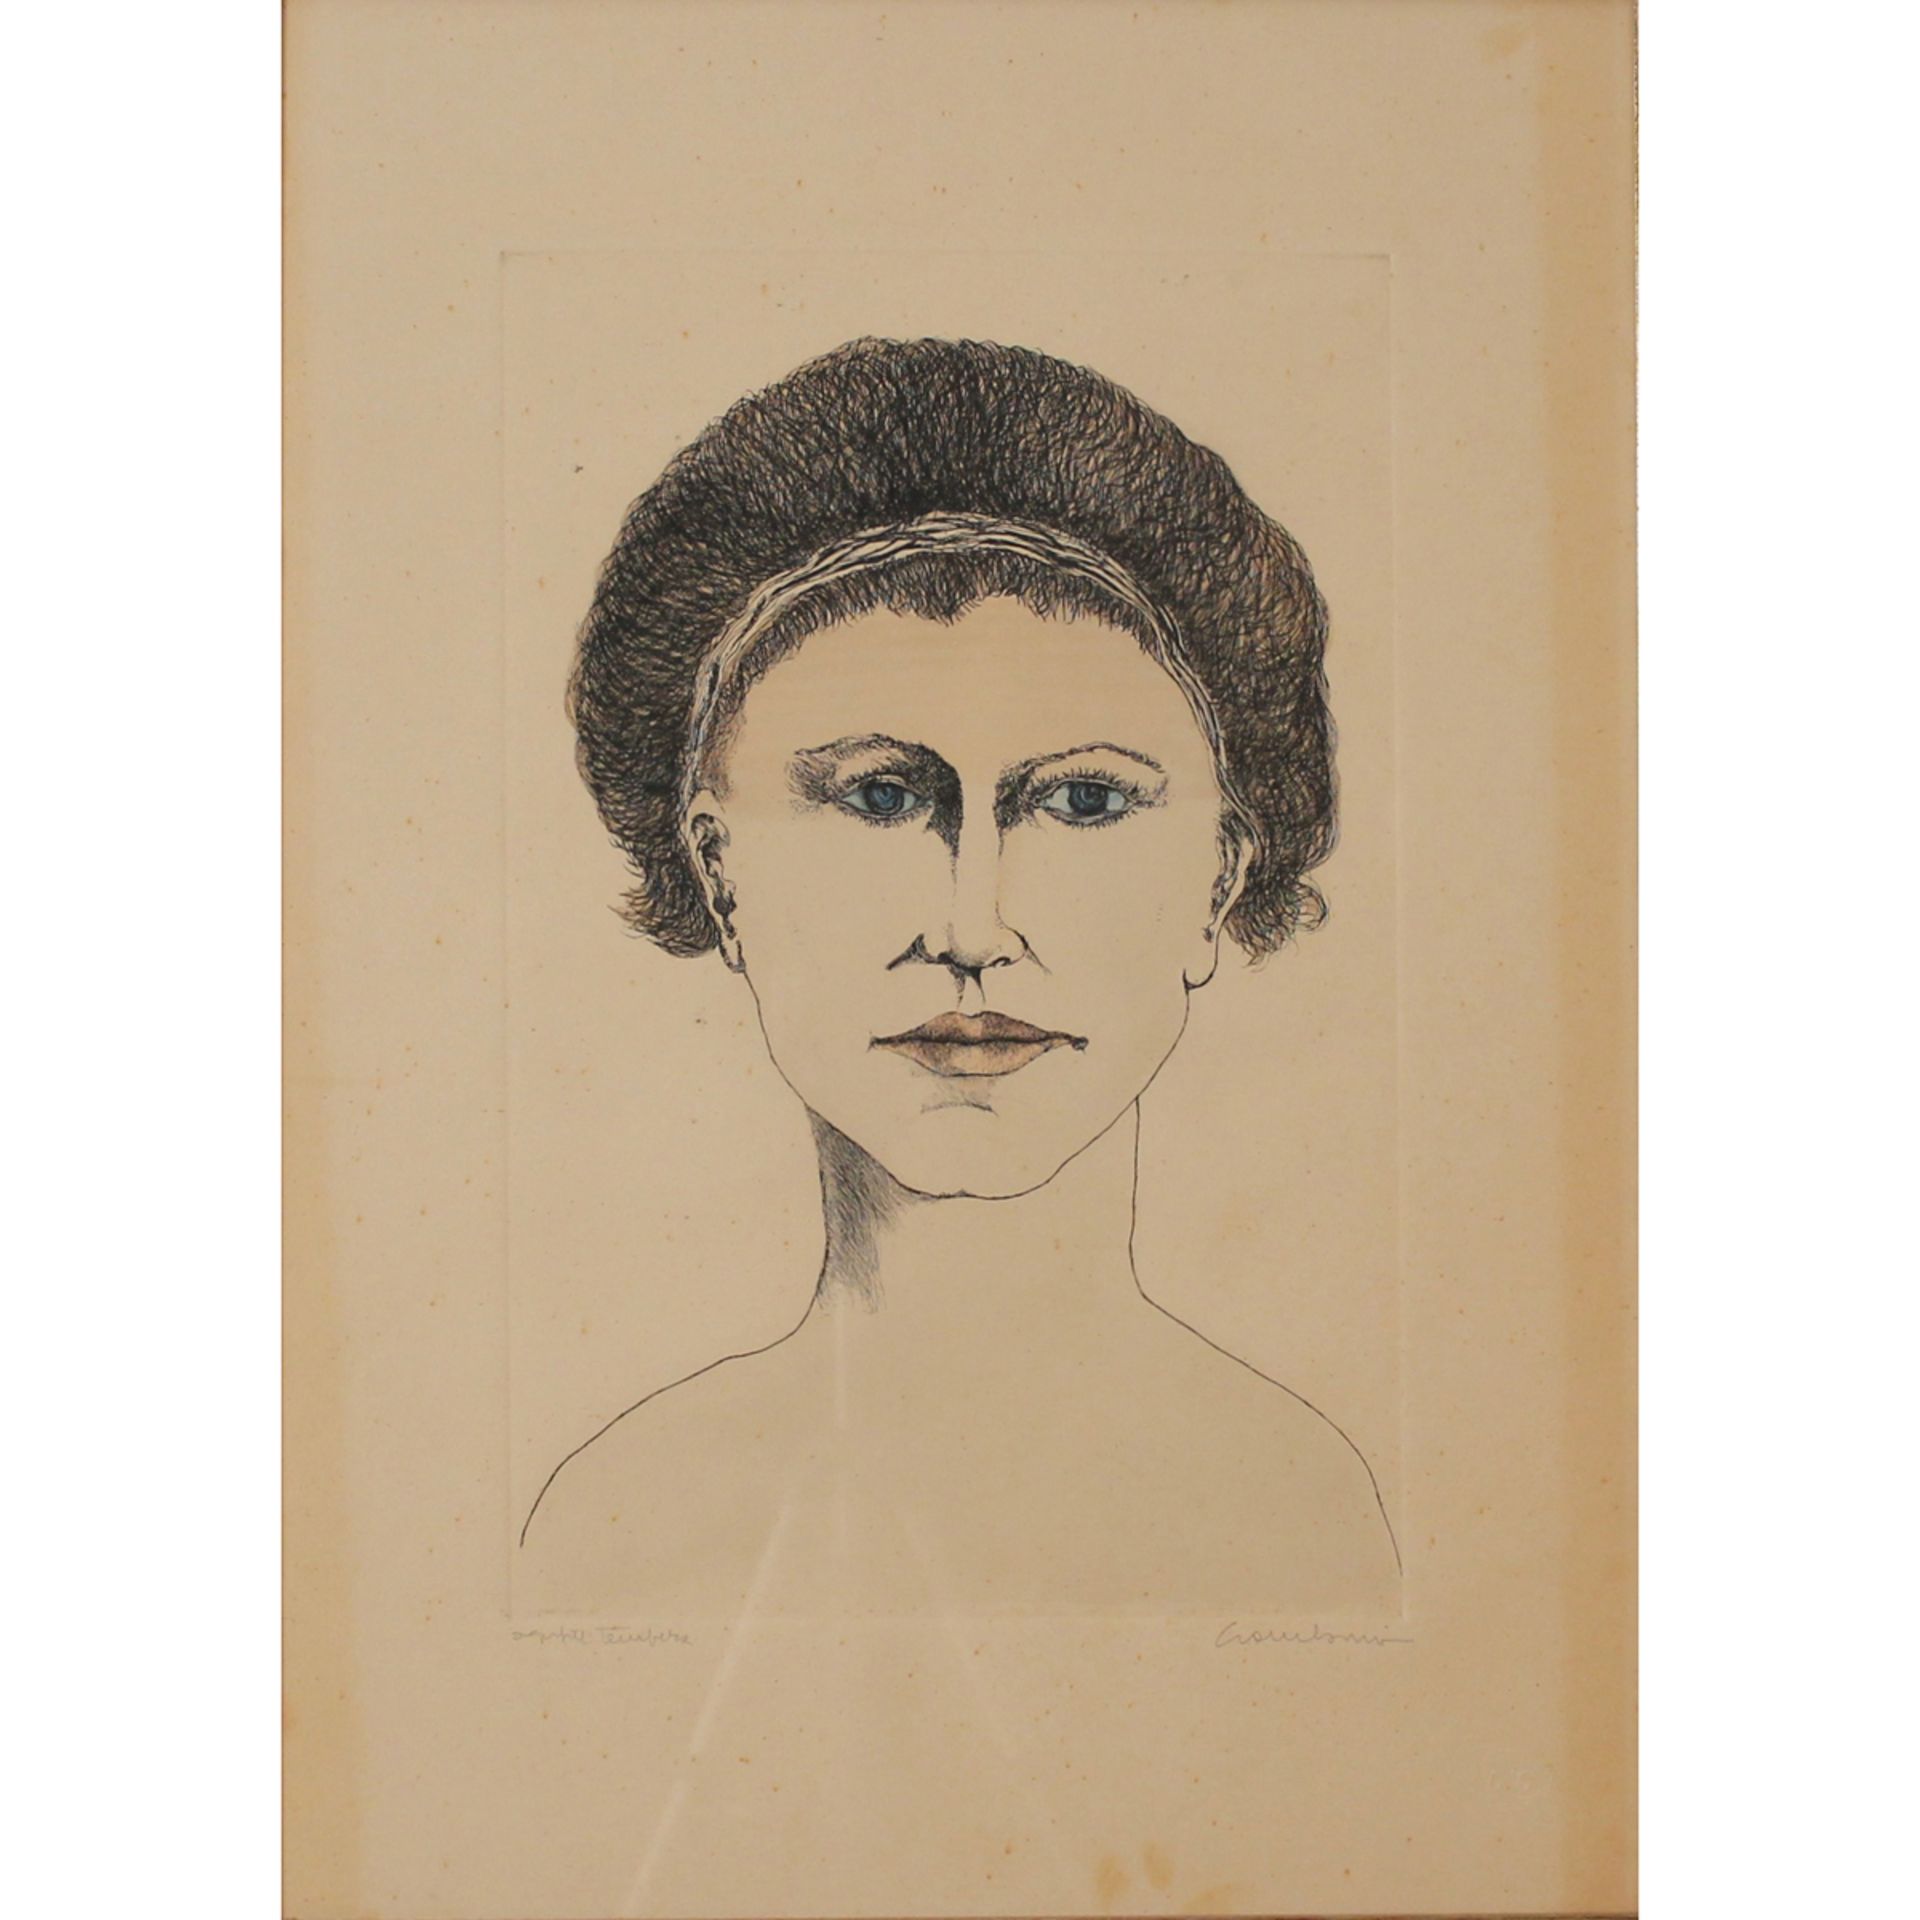 Pippo Gambibno (1935/2004) "Ritratti di donne" - "Portraits of women" - Image 2 of 2